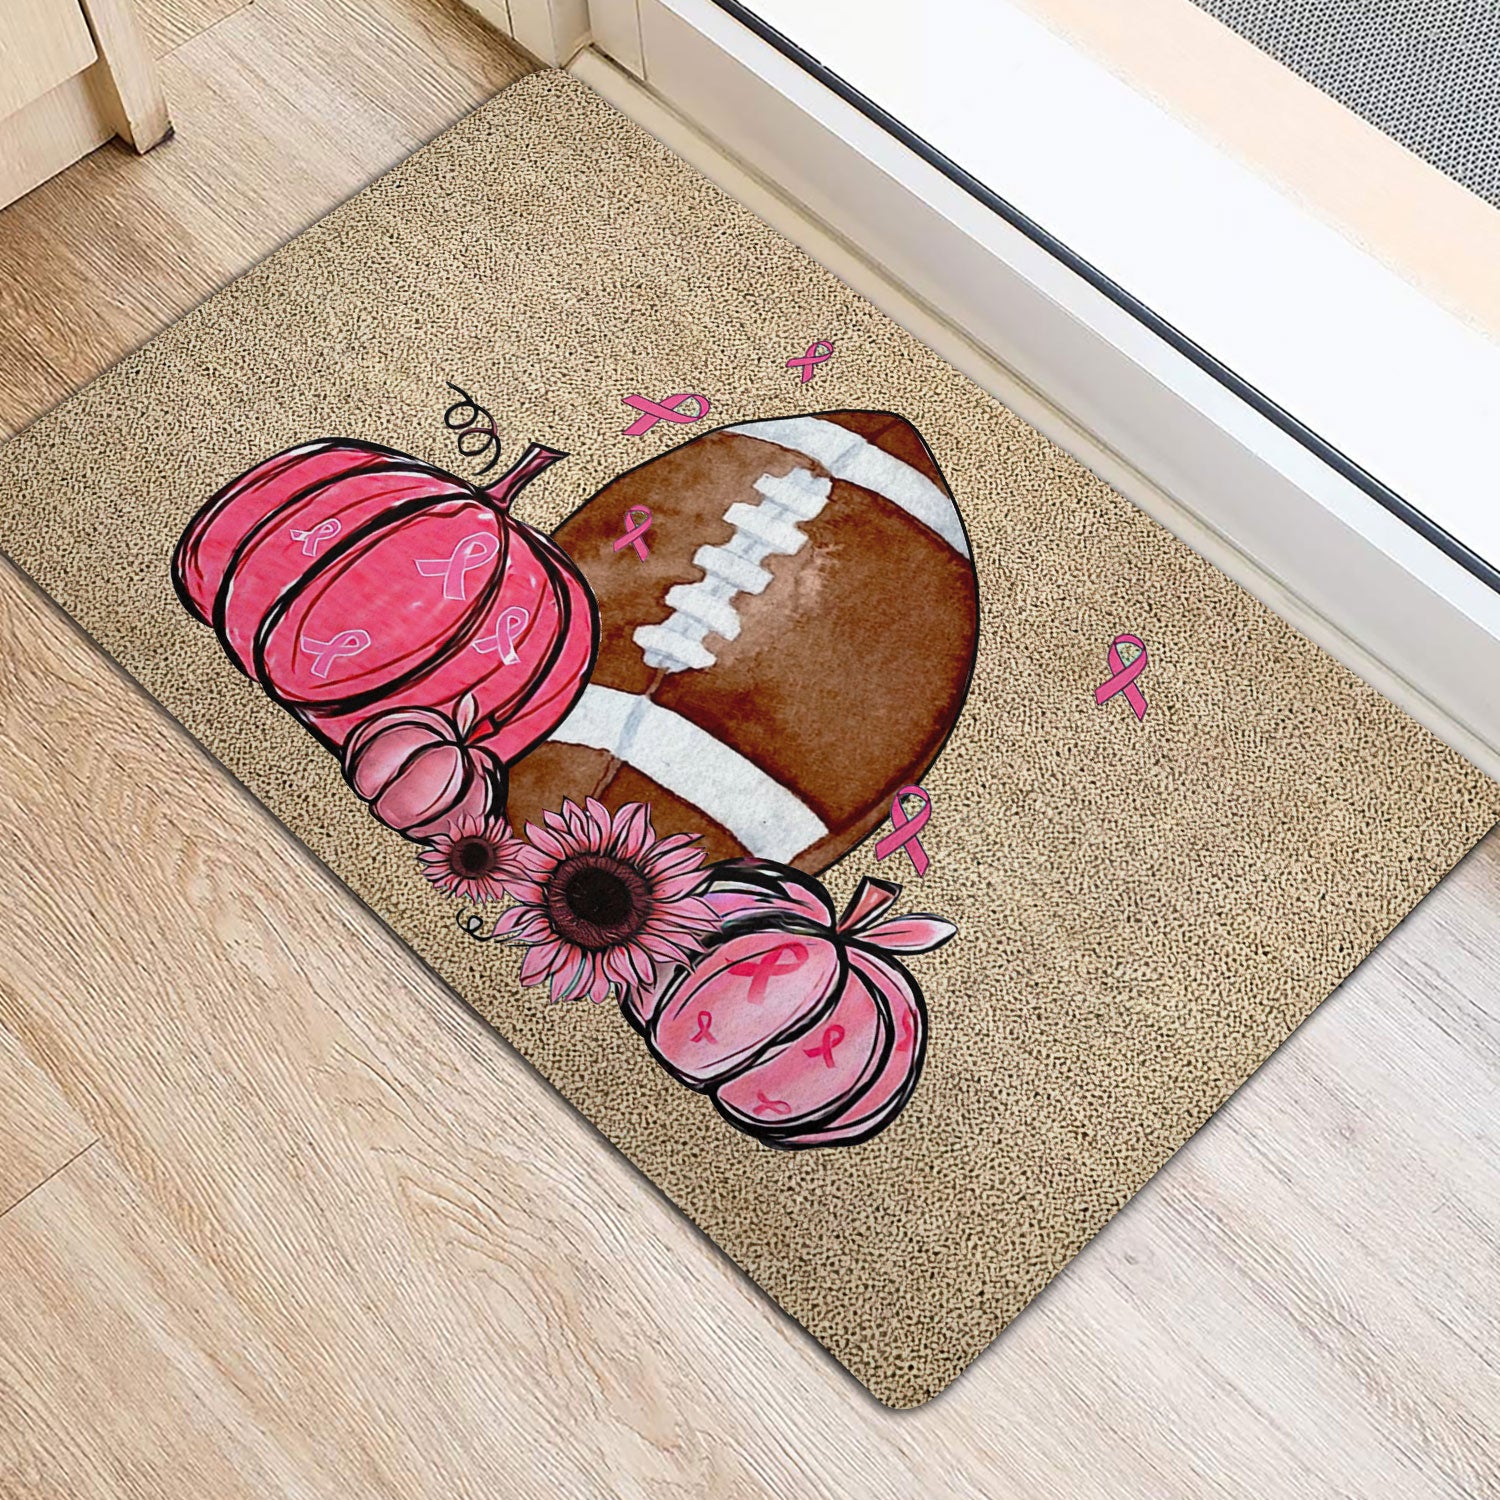 Ohaprints-Doormat-Outdoor-Indoor-Breast-Cancer-Football-Pumpkin-Hope-Support-Pink-Ribbon-Rubber-Door-Mat-1920-